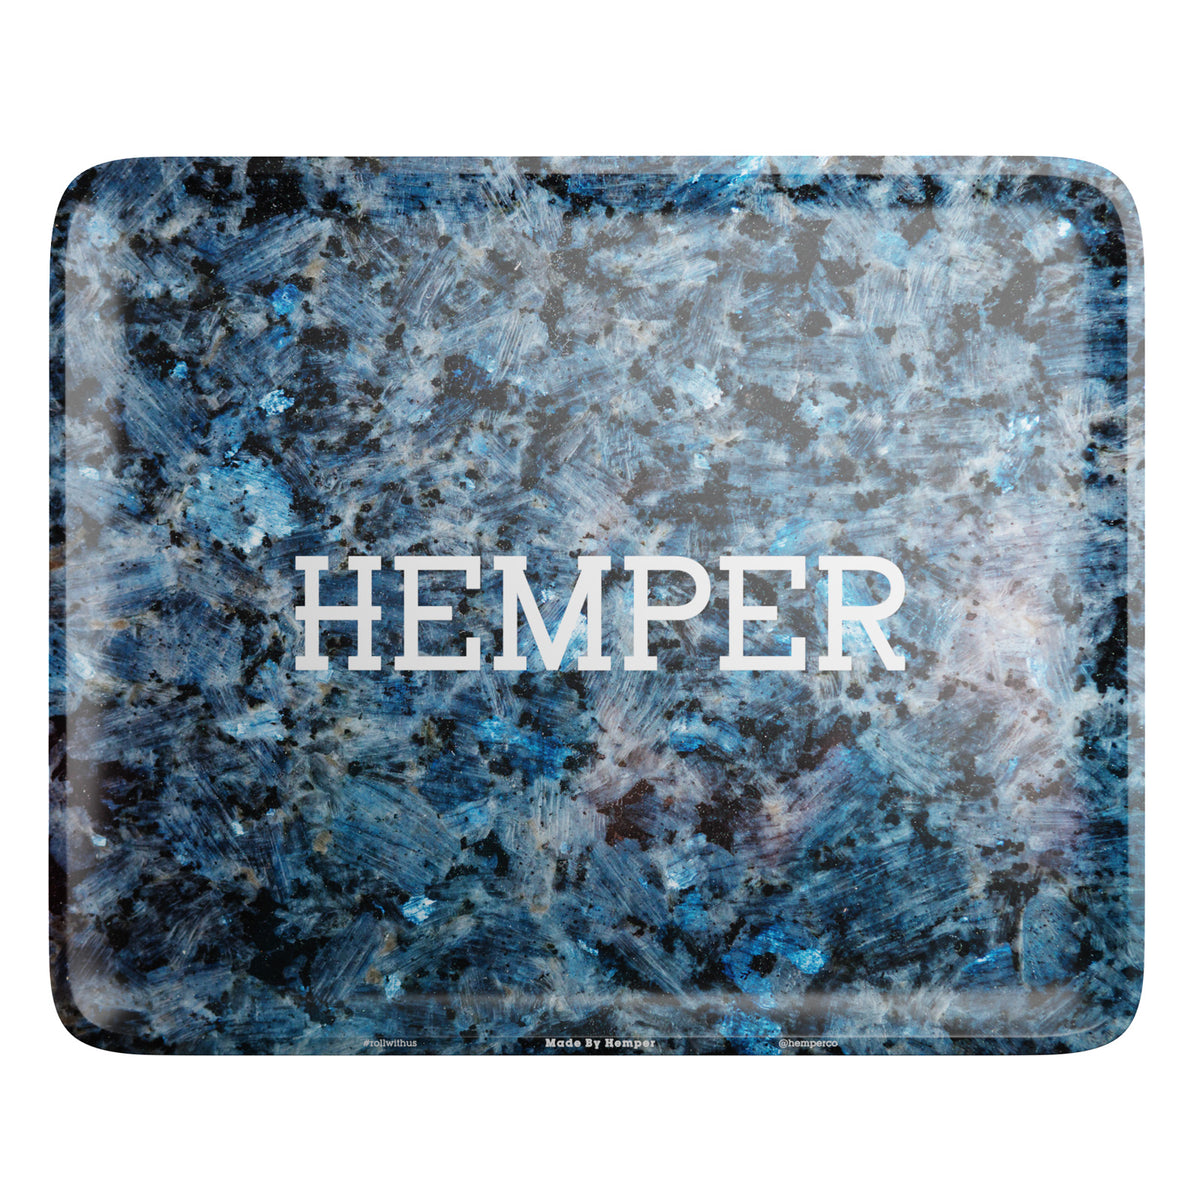 HEMPER - It's Lit Party Rolling Tray